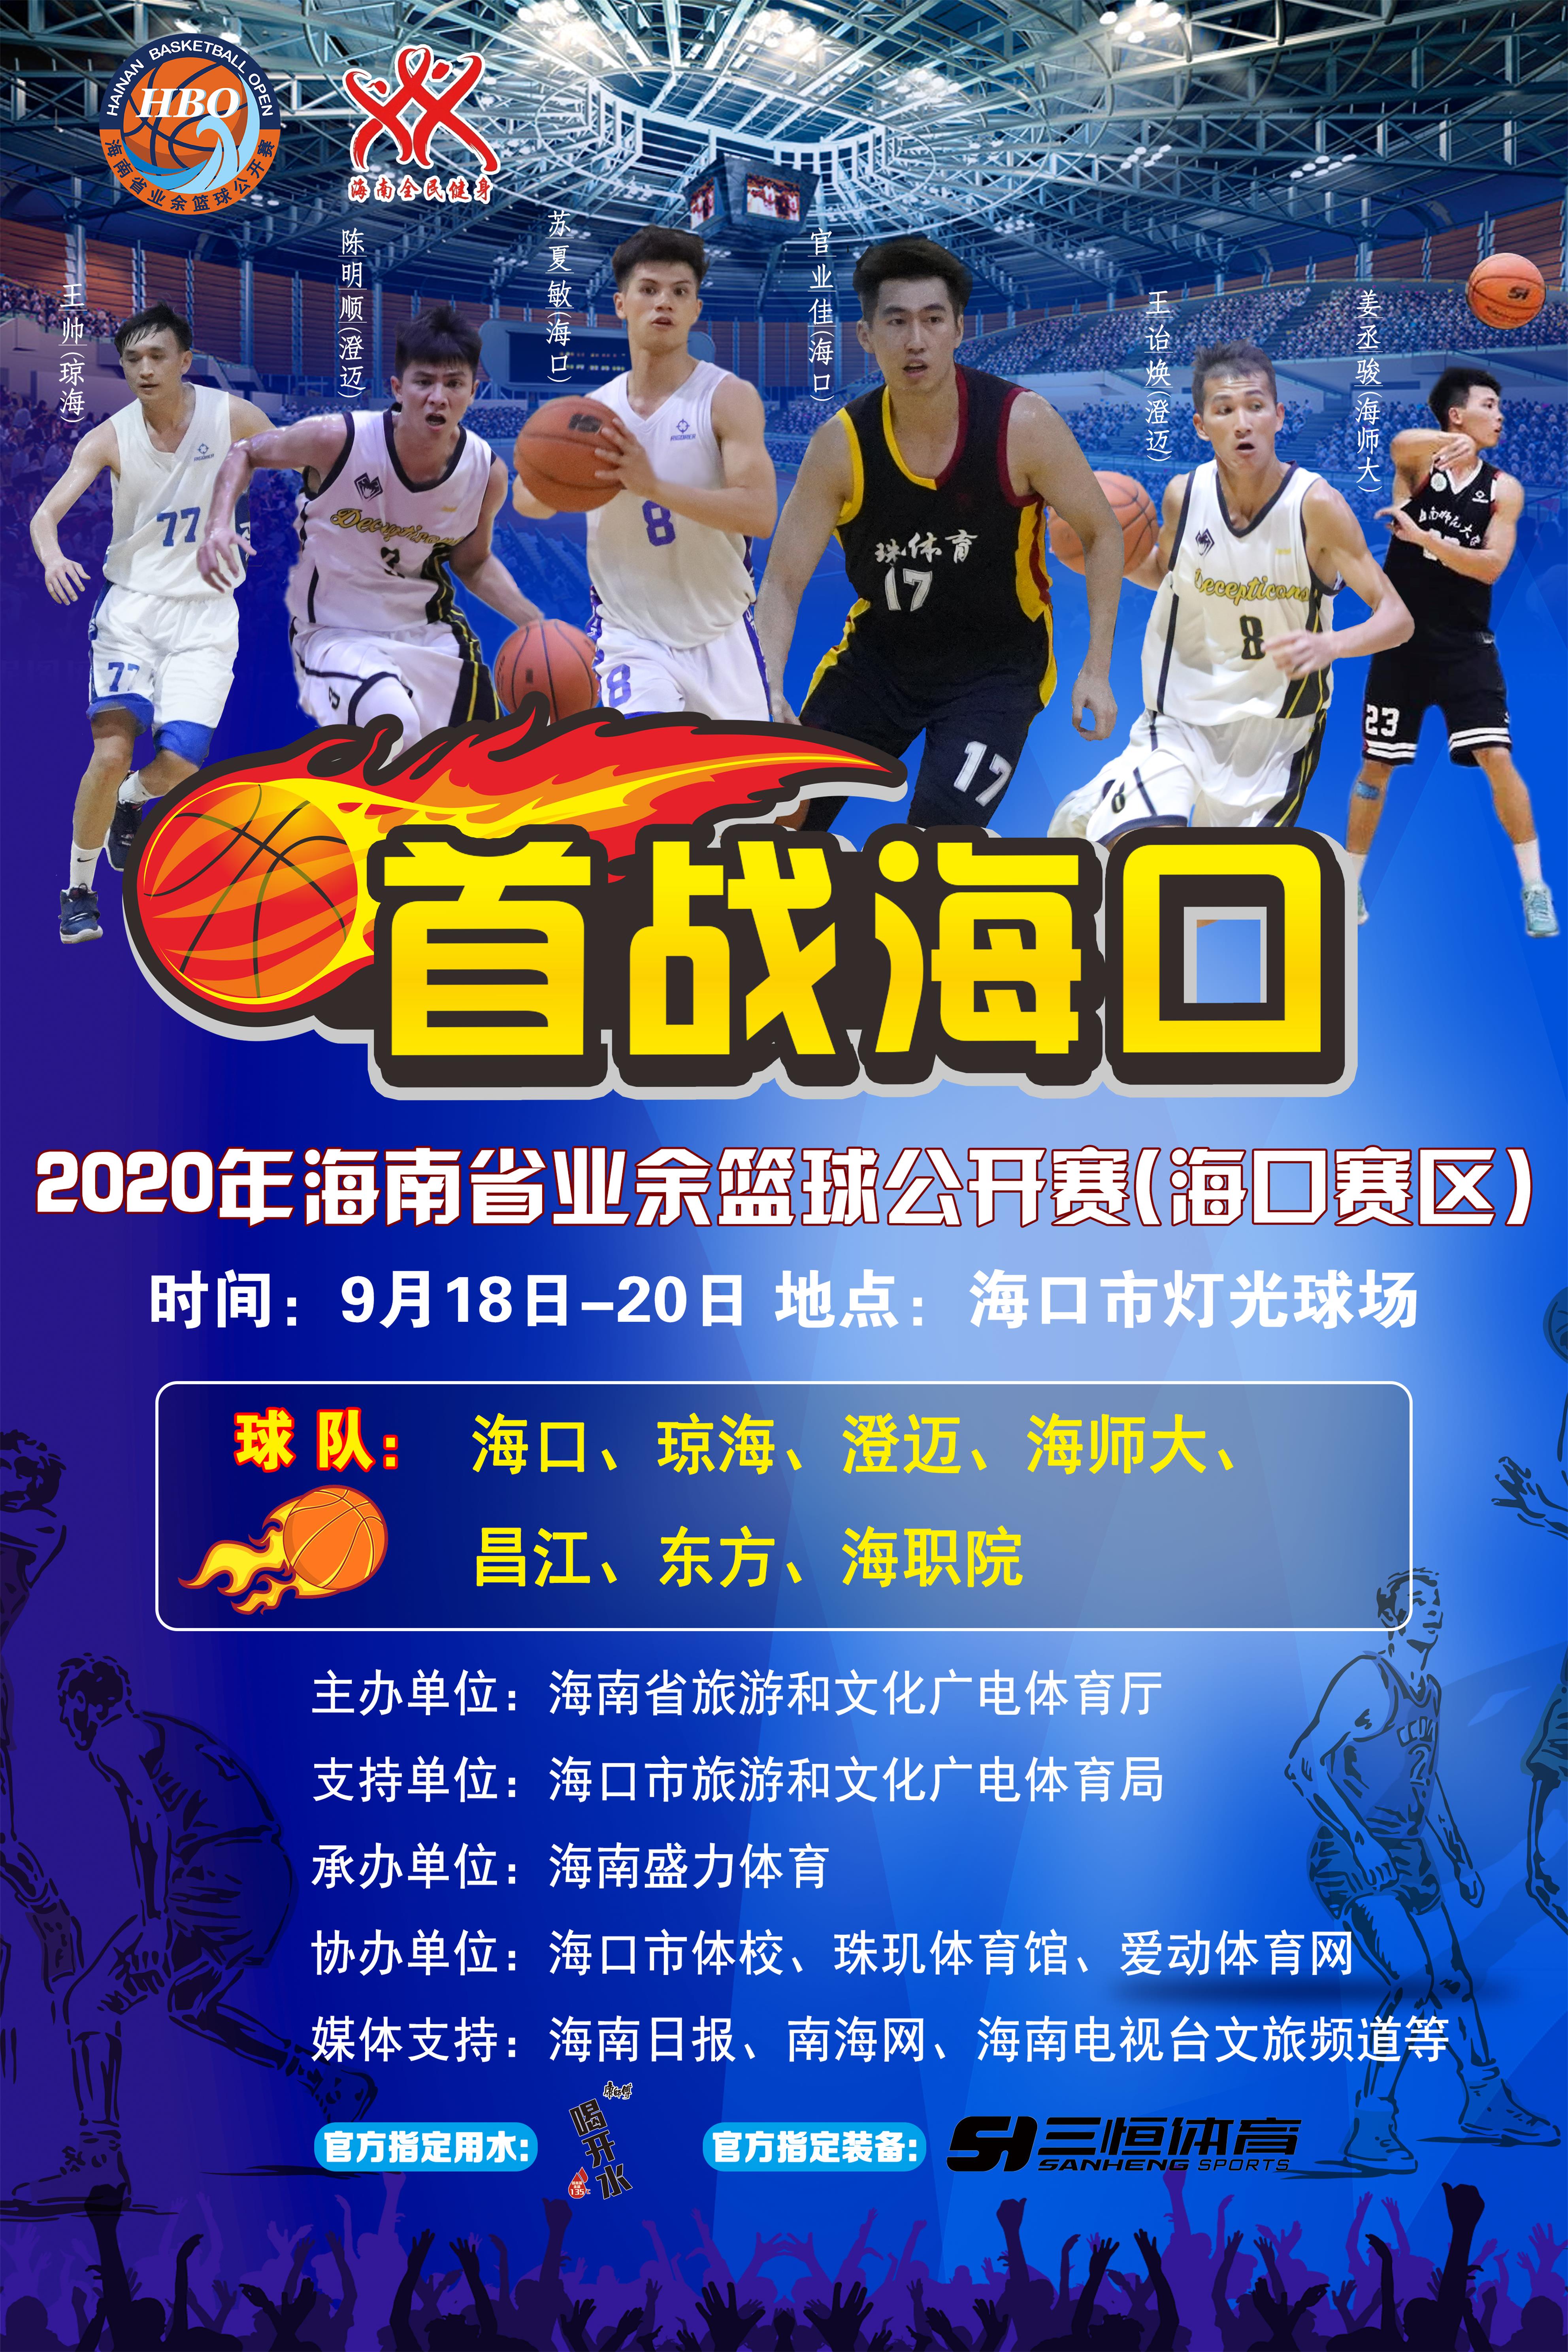 【回放】2020年海南省业余篮球公开赛 20日 海口赛区